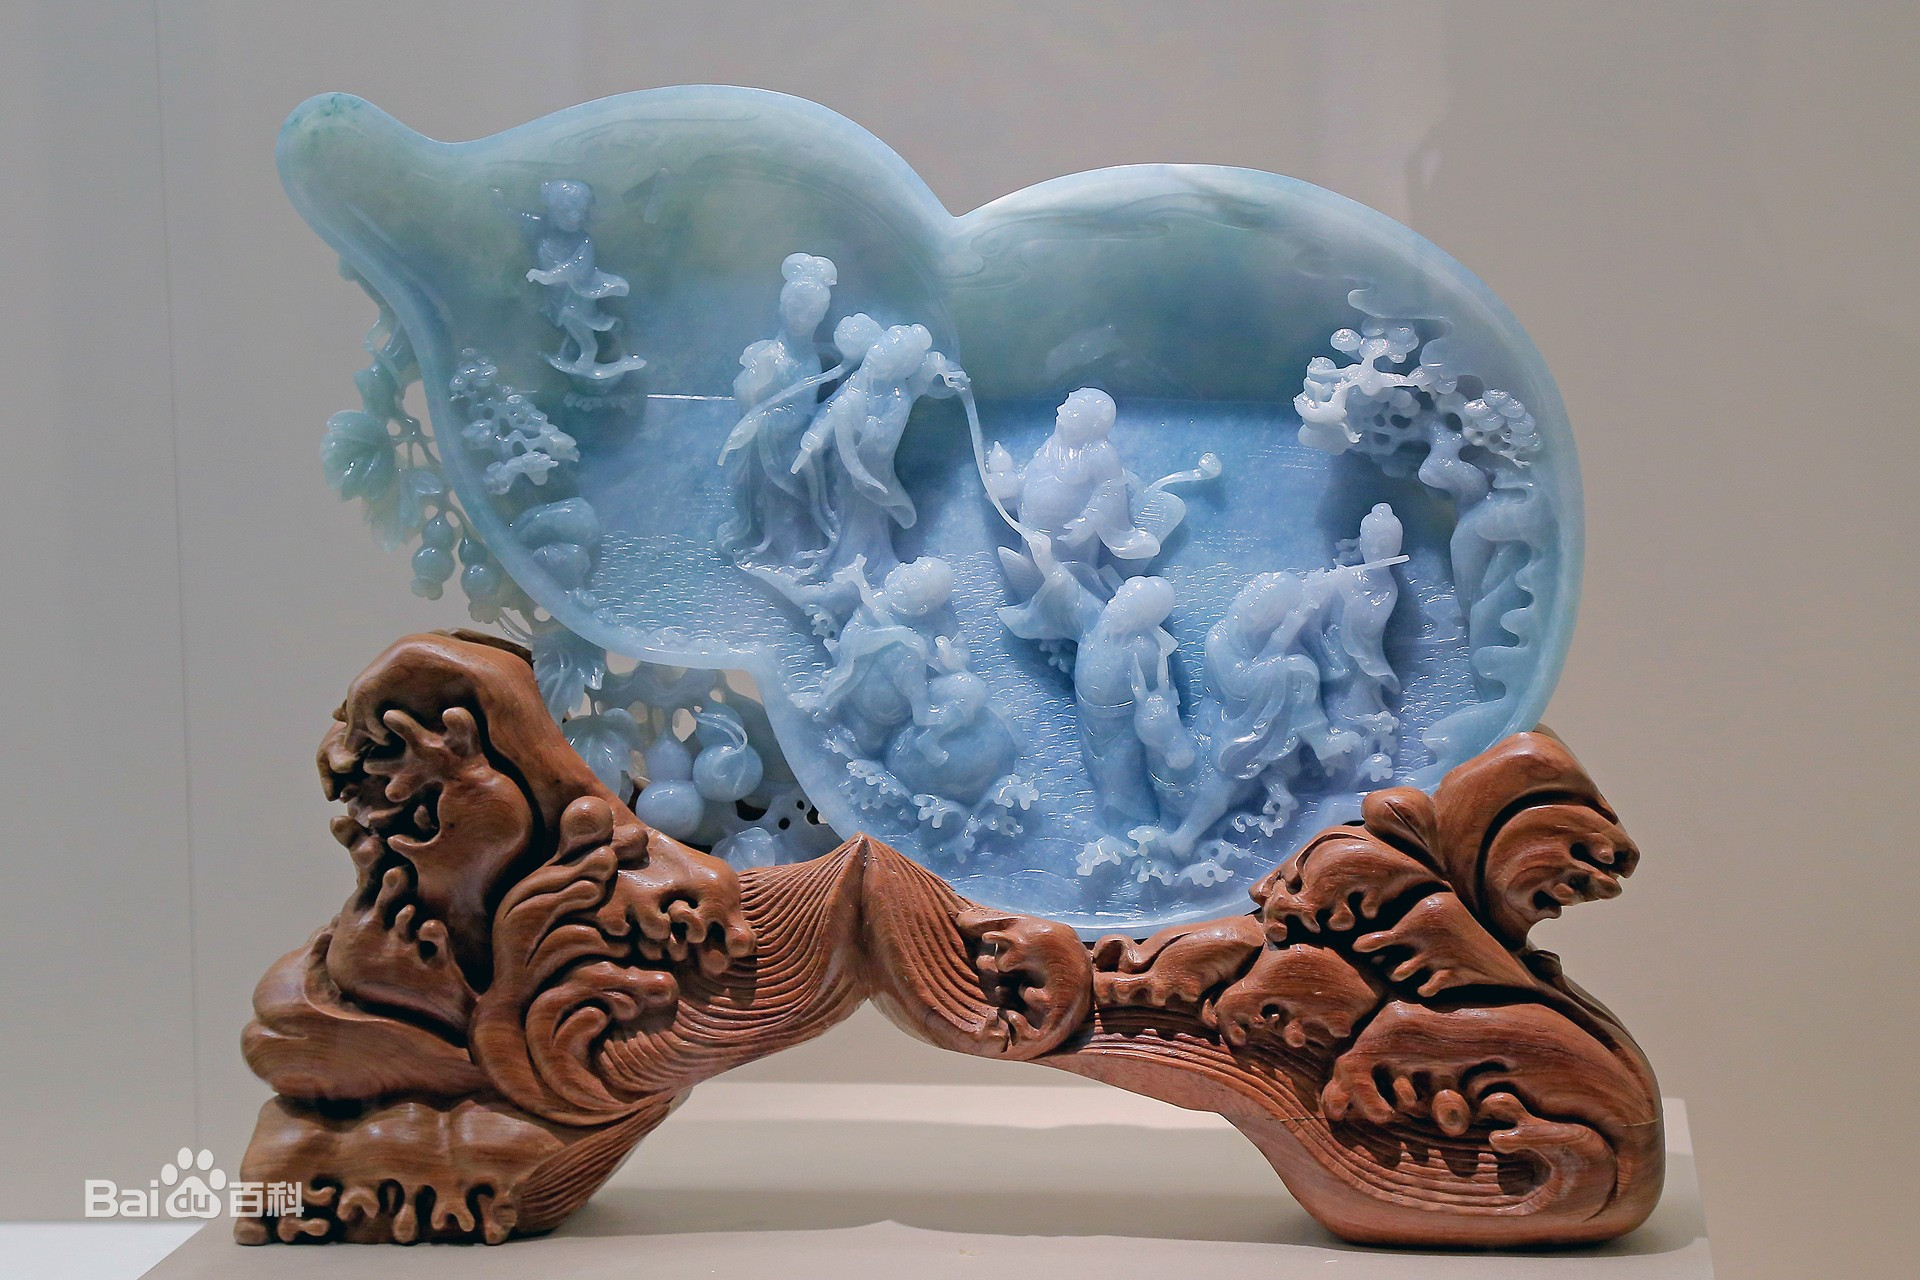 玉雕是中国最古老的雕刻品种之一。玉石经加工雕琢成为精美的工艺品，称为玉雕。工艺师在制作过程中，根据不同玉料的天然颜色和自然形状，经过精心设计、反复琢磨，才能把玉石雕制成精美的工艺品。